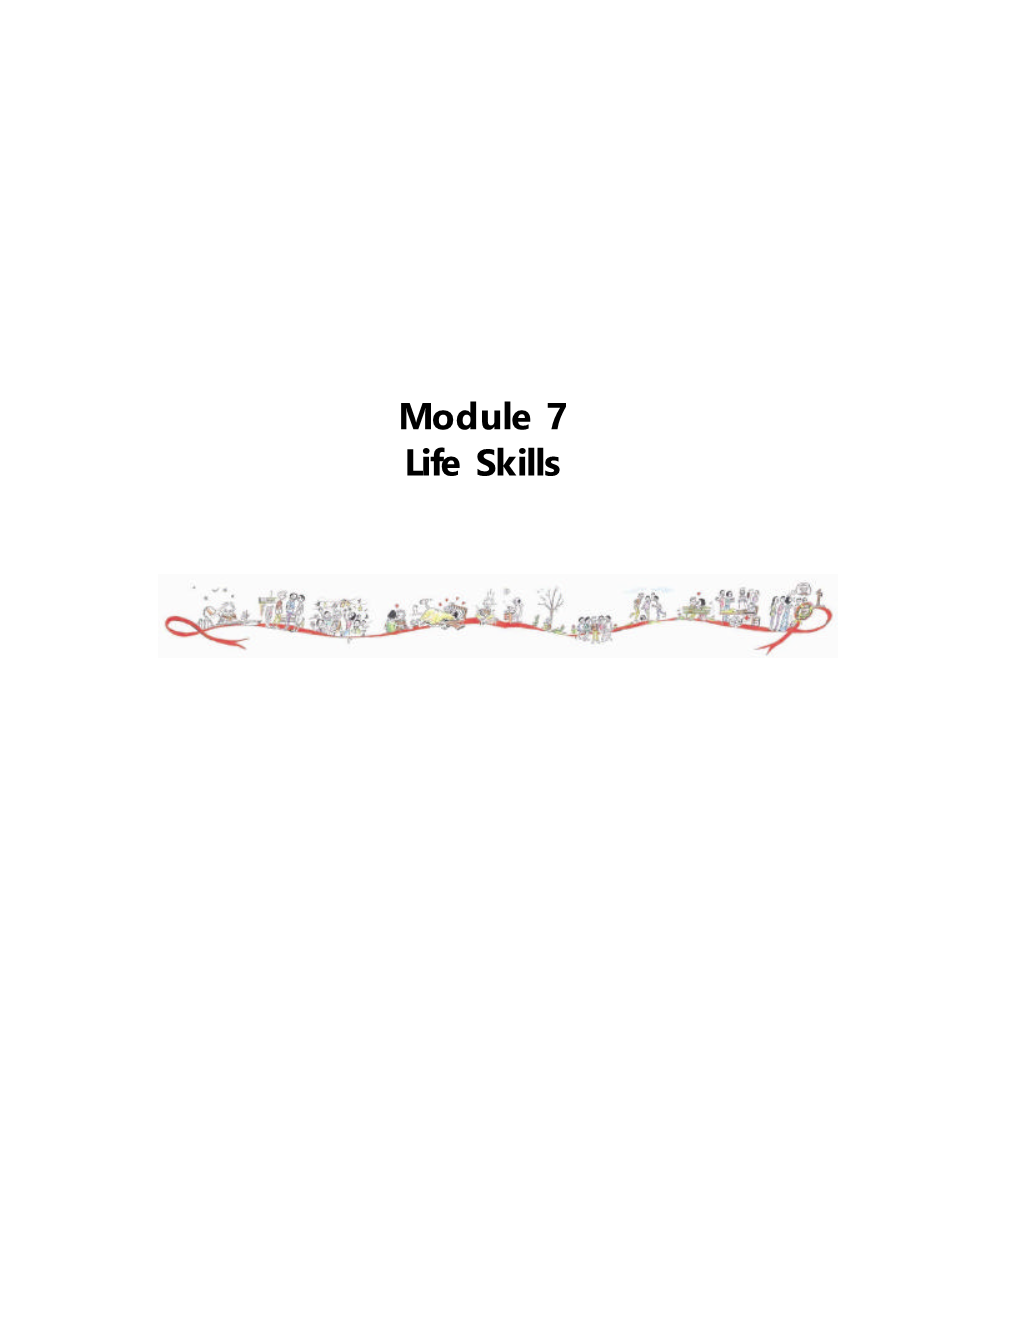 Module VII Life Skills